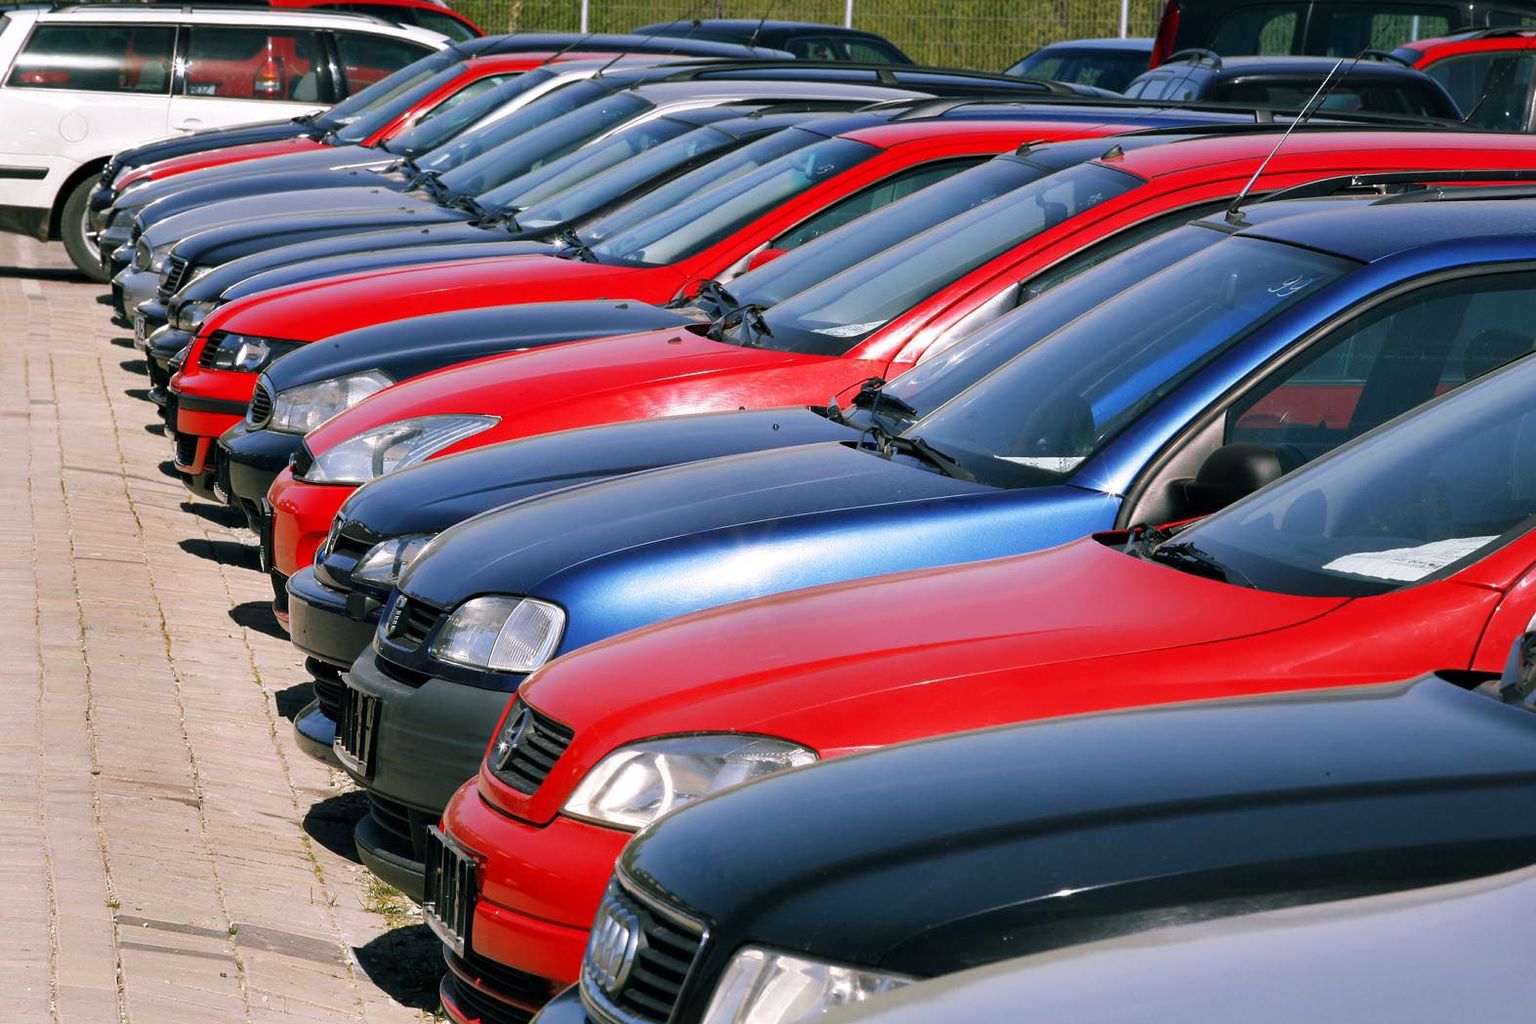 Kontrollida tasub, kes tegelikult autot müüb – ettevõte või eraisik. Sellest sõltuvad ostja võimalused tegutseda pretensioonide korral.